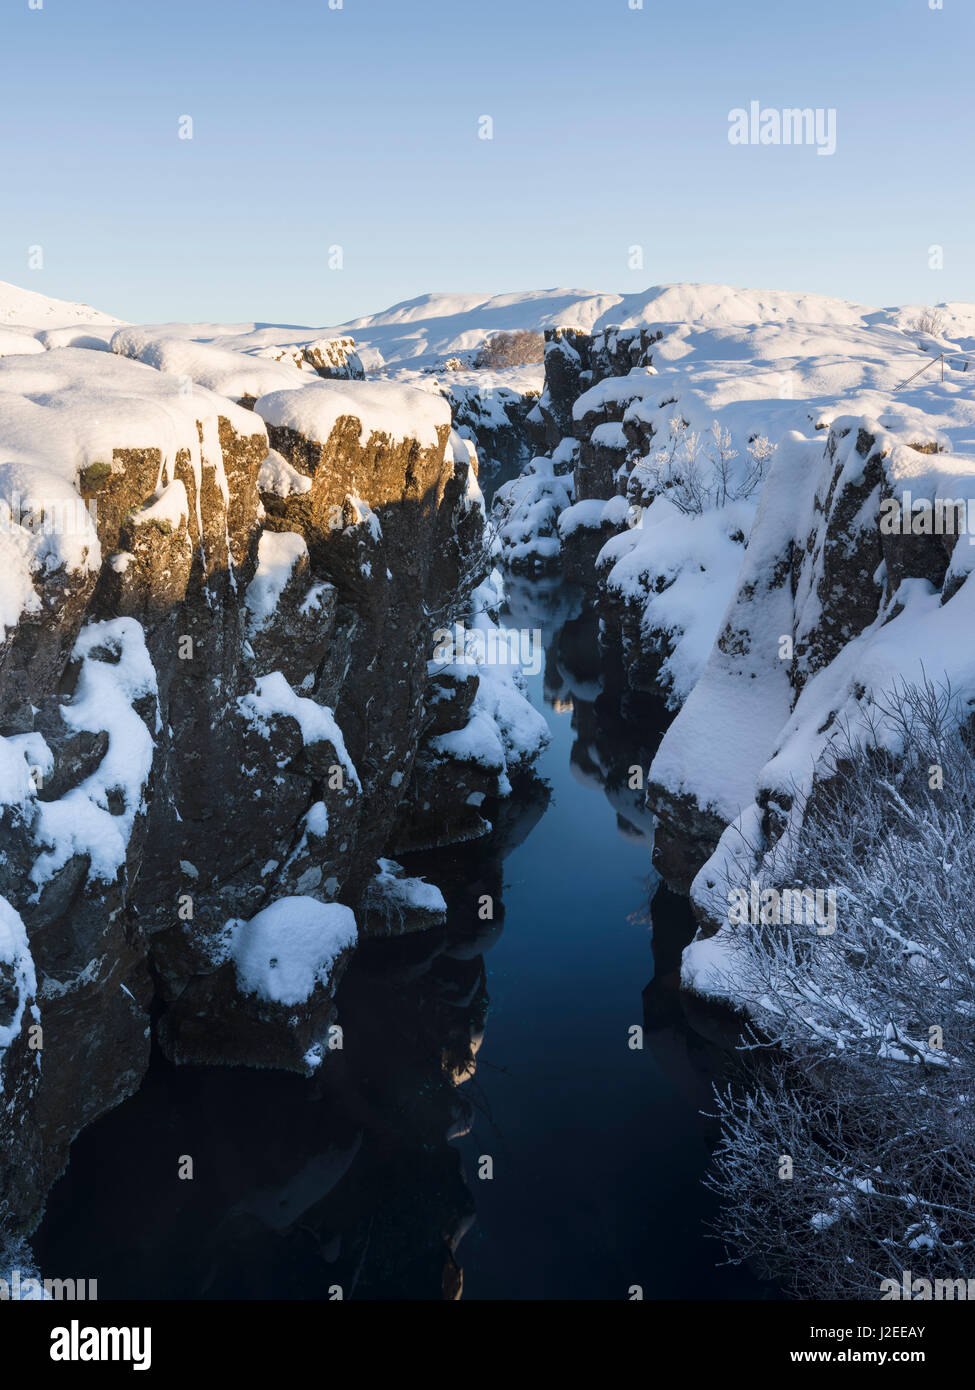 Flosagja une ligne de faille tectonique dans le Parc National de Thingvellir dans durant l'hiver dans la neige profonde. Thingvellir est inscrit comme site du patrimoine mondial de l'UNESCO. L'Islande Banque D'Images